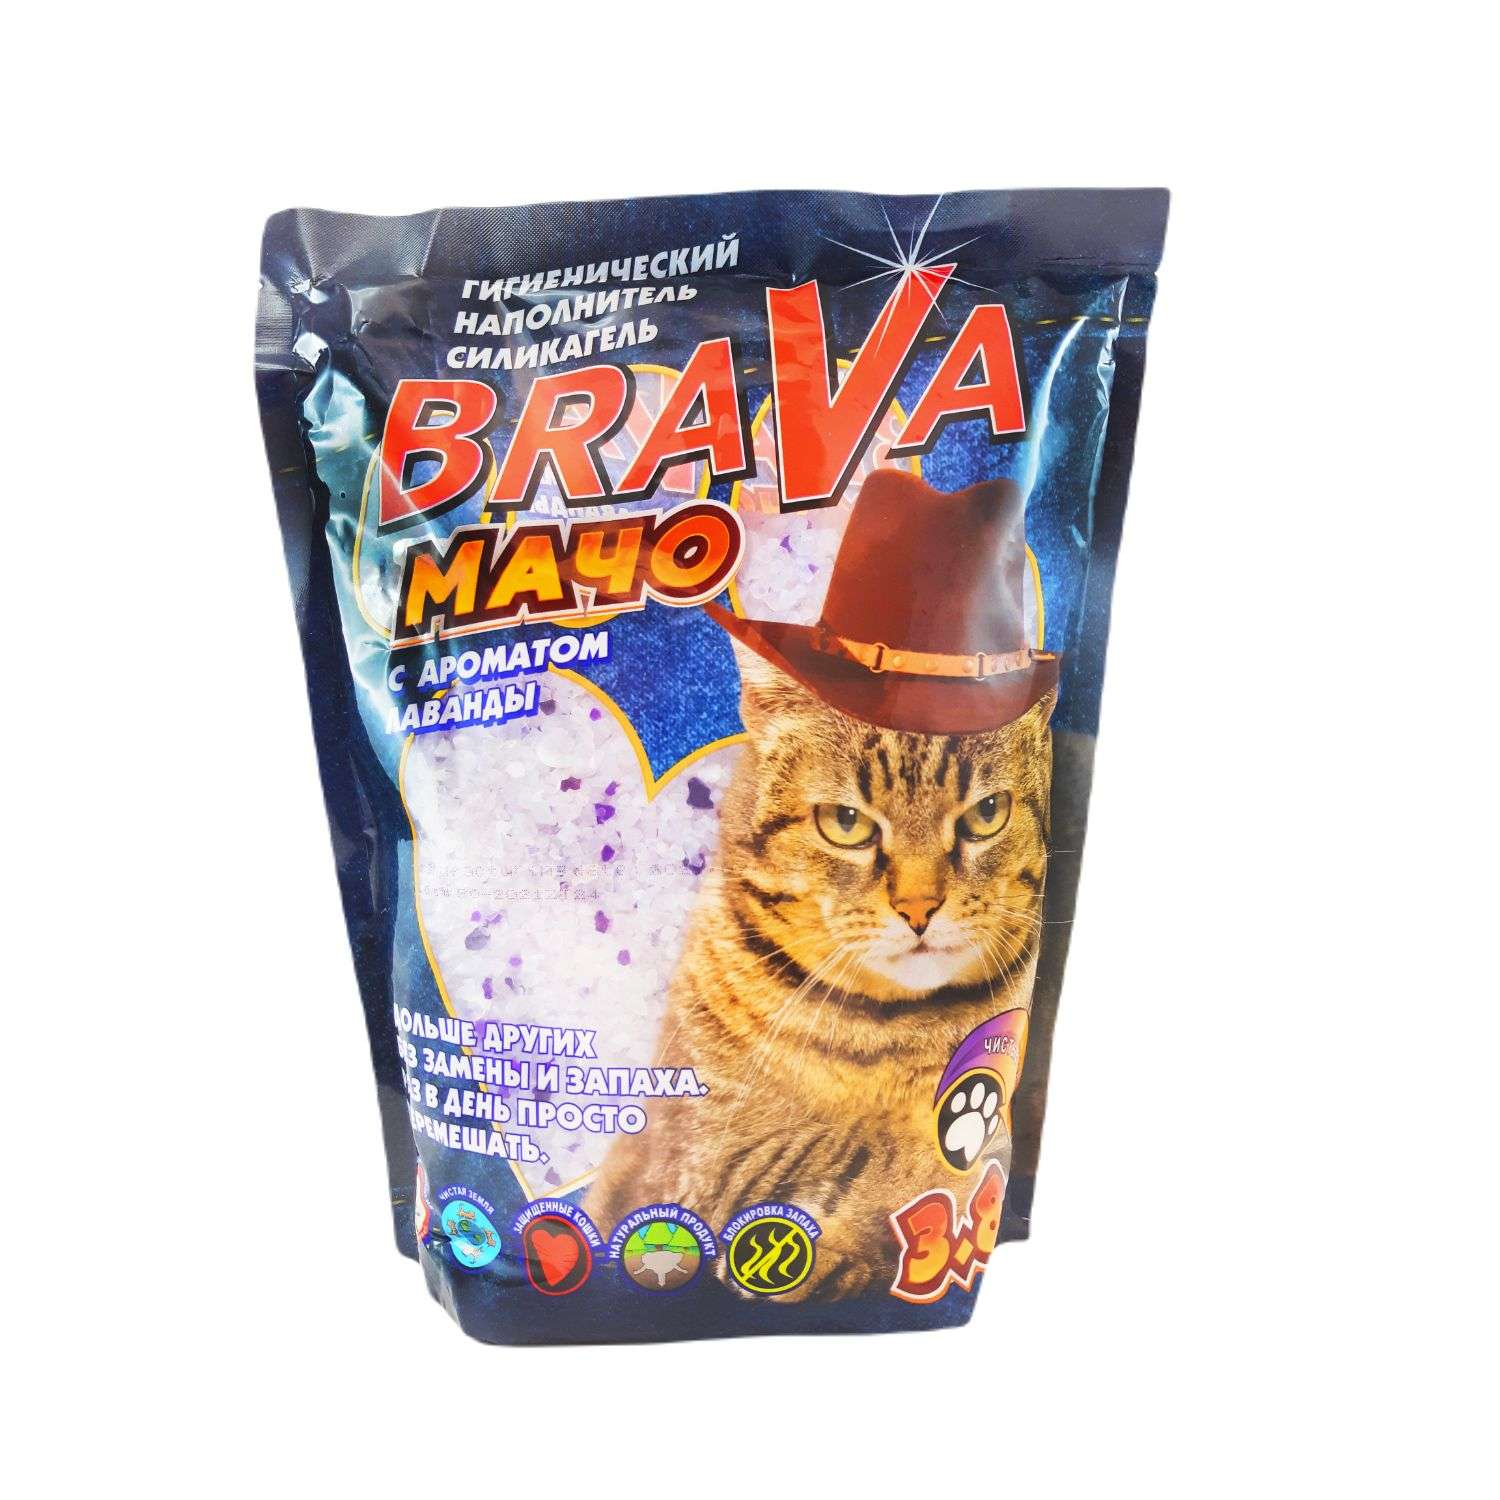 Наполнитель для кошек BraVa Мачо силикагелевый впитывающий лав 3.8л - фото 1